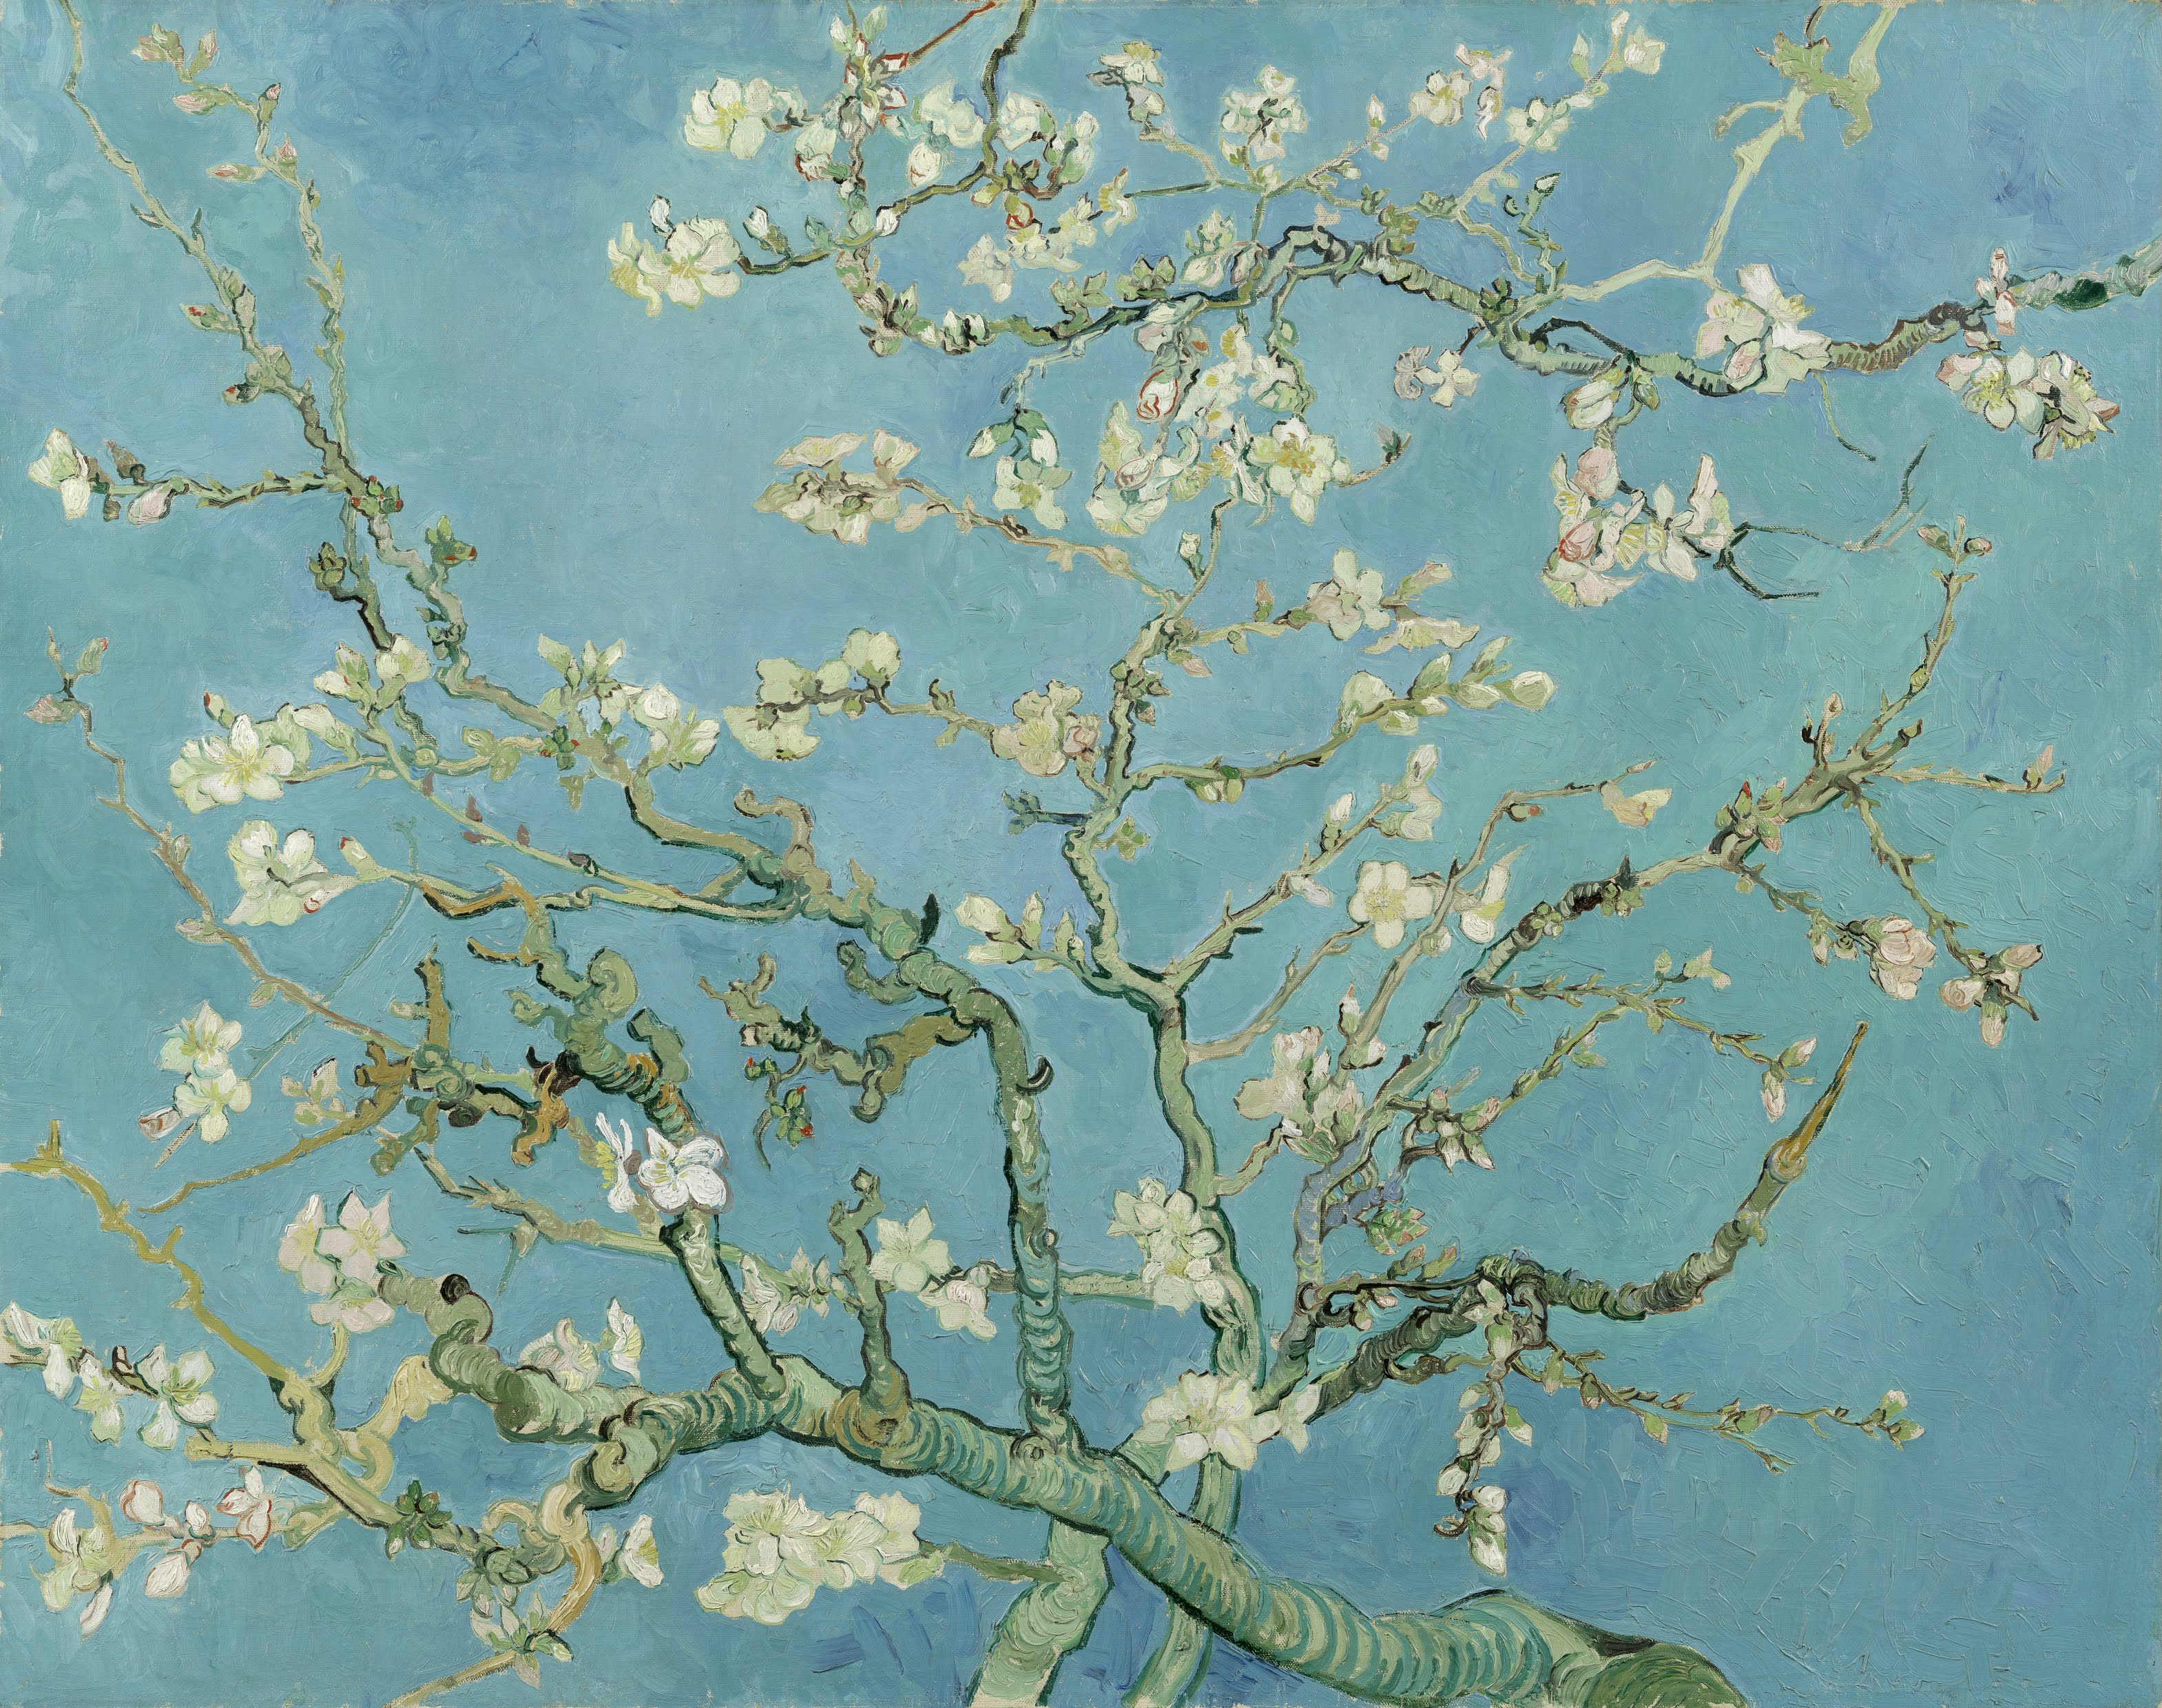 花咲くアーモンドの木の枝 by フィンセント・ ファン・ゴッホ - 1890年 - 74 x 92 cm 